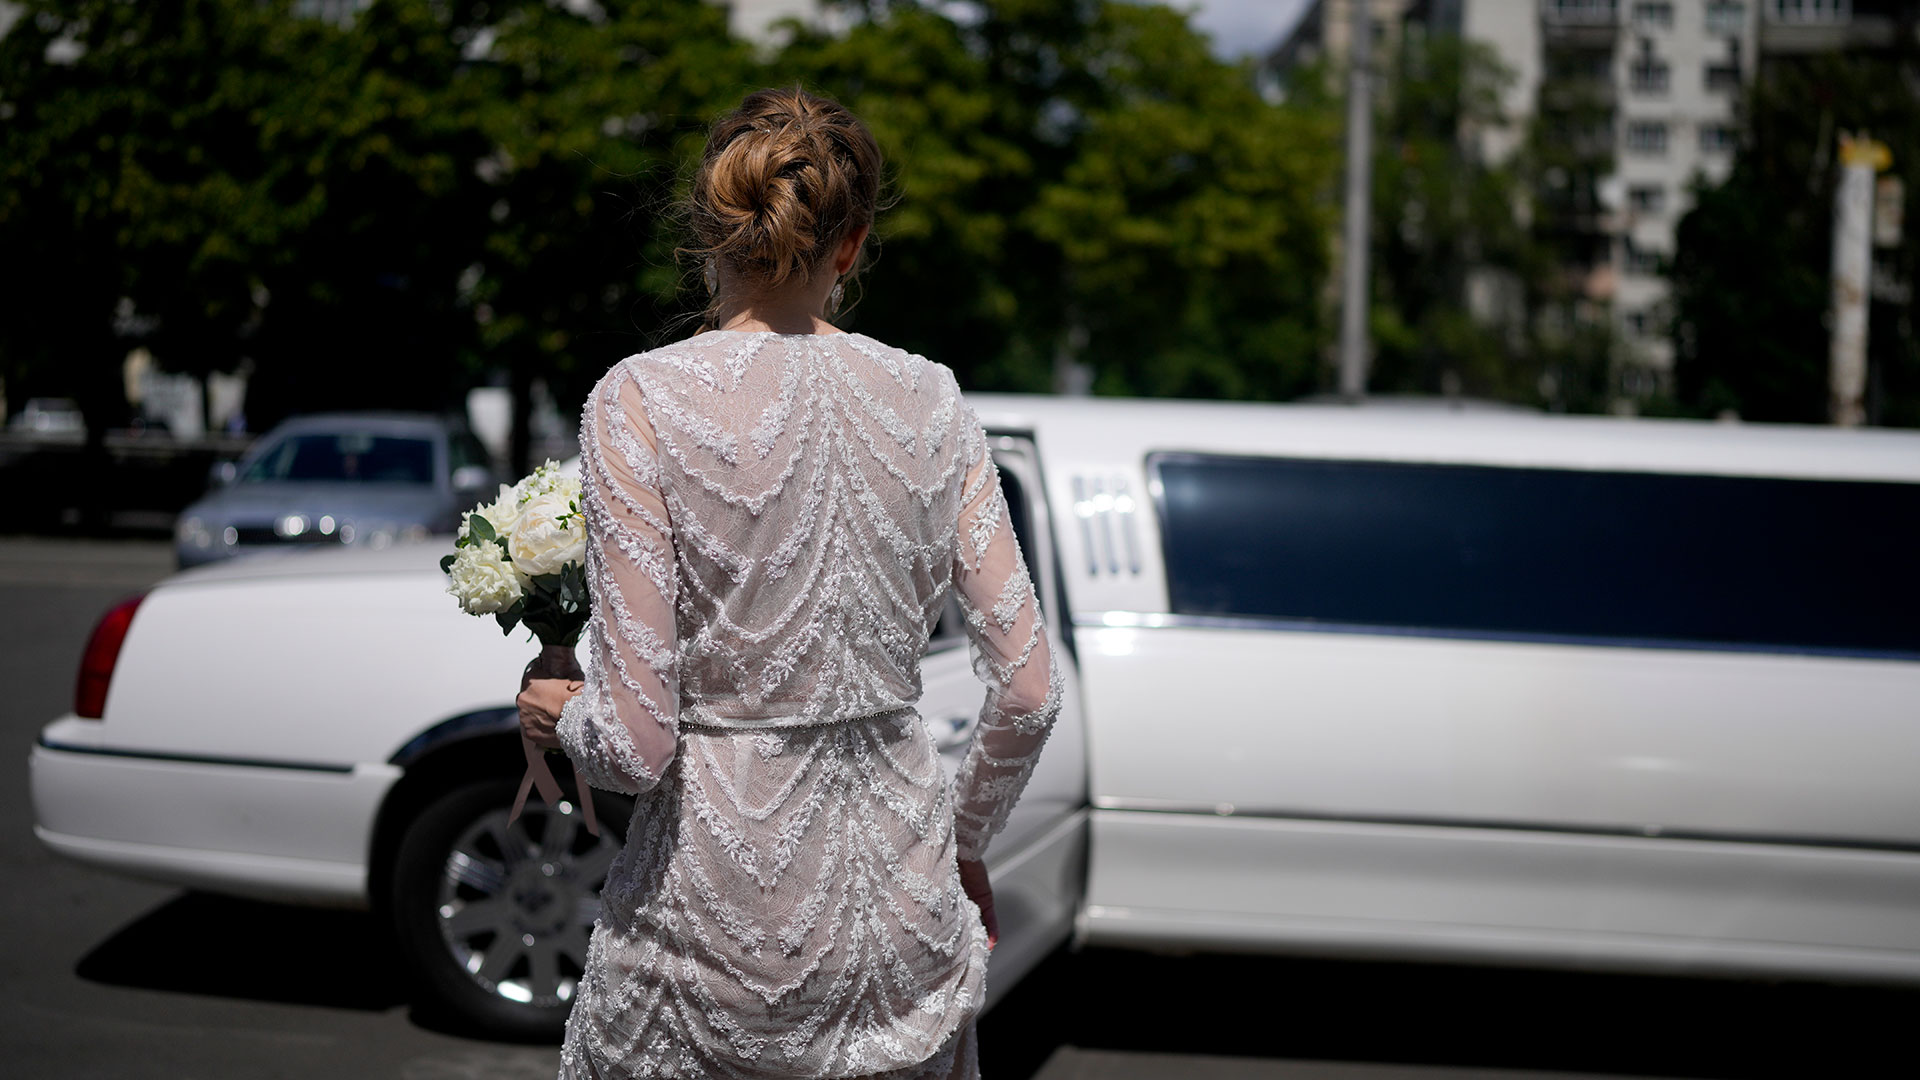 Anna Karpenko se dirige a la limusina después de casarse con Denys Voznyi en Kyiv, Ucrania, el miércoles 15 de junio de 2022. (Foto AP/Natacha Pisarenko)

